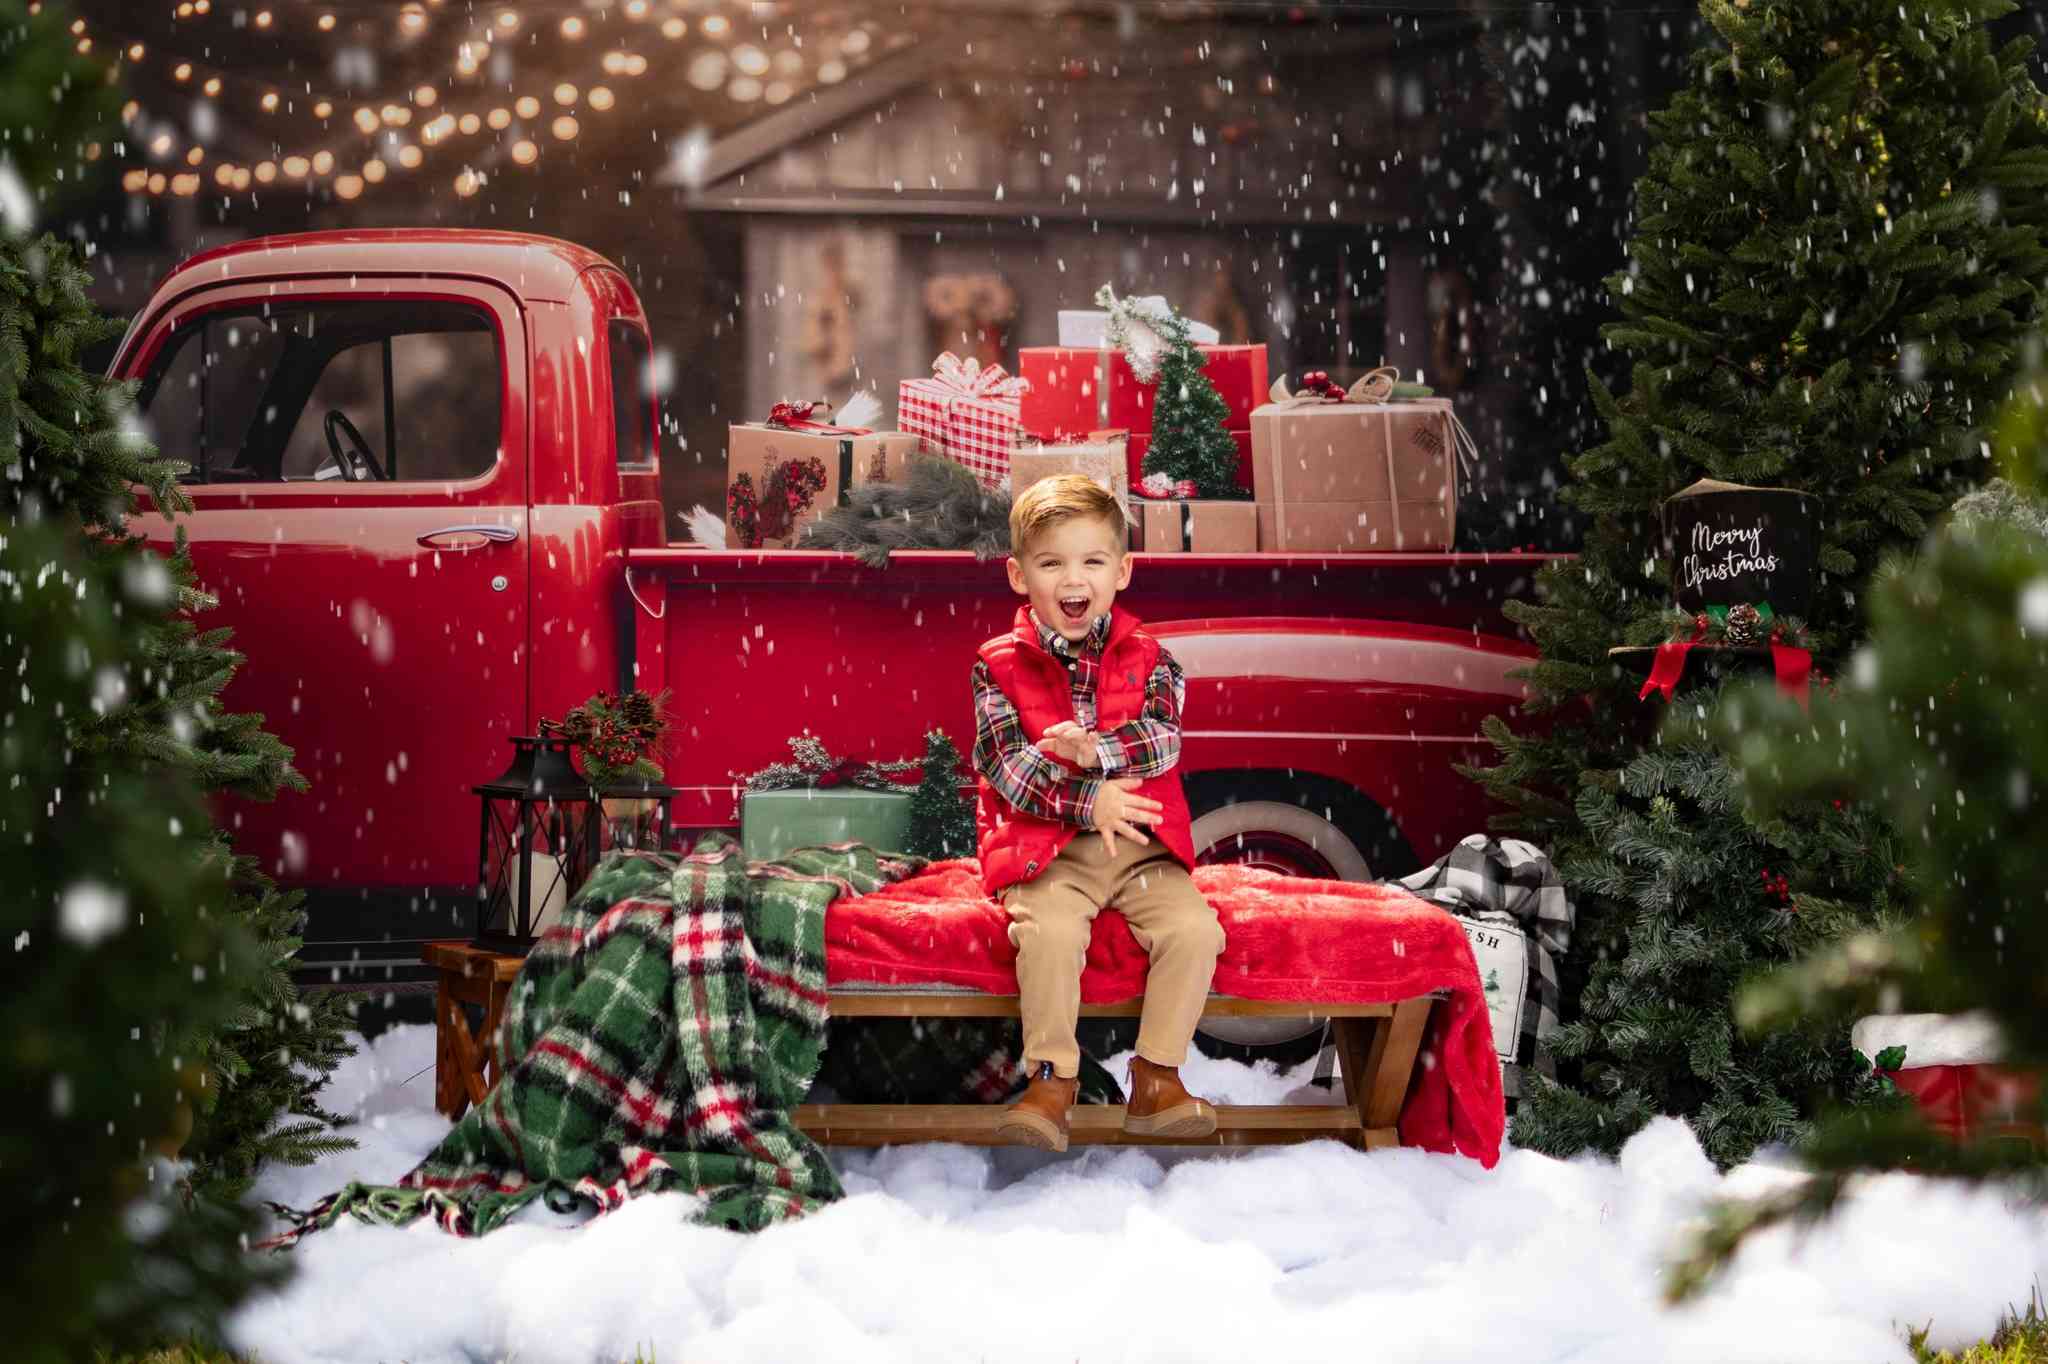 Kate Weihnachtsgeschenk Weihnachten in rotem Auto Hintergrund für Fotografie